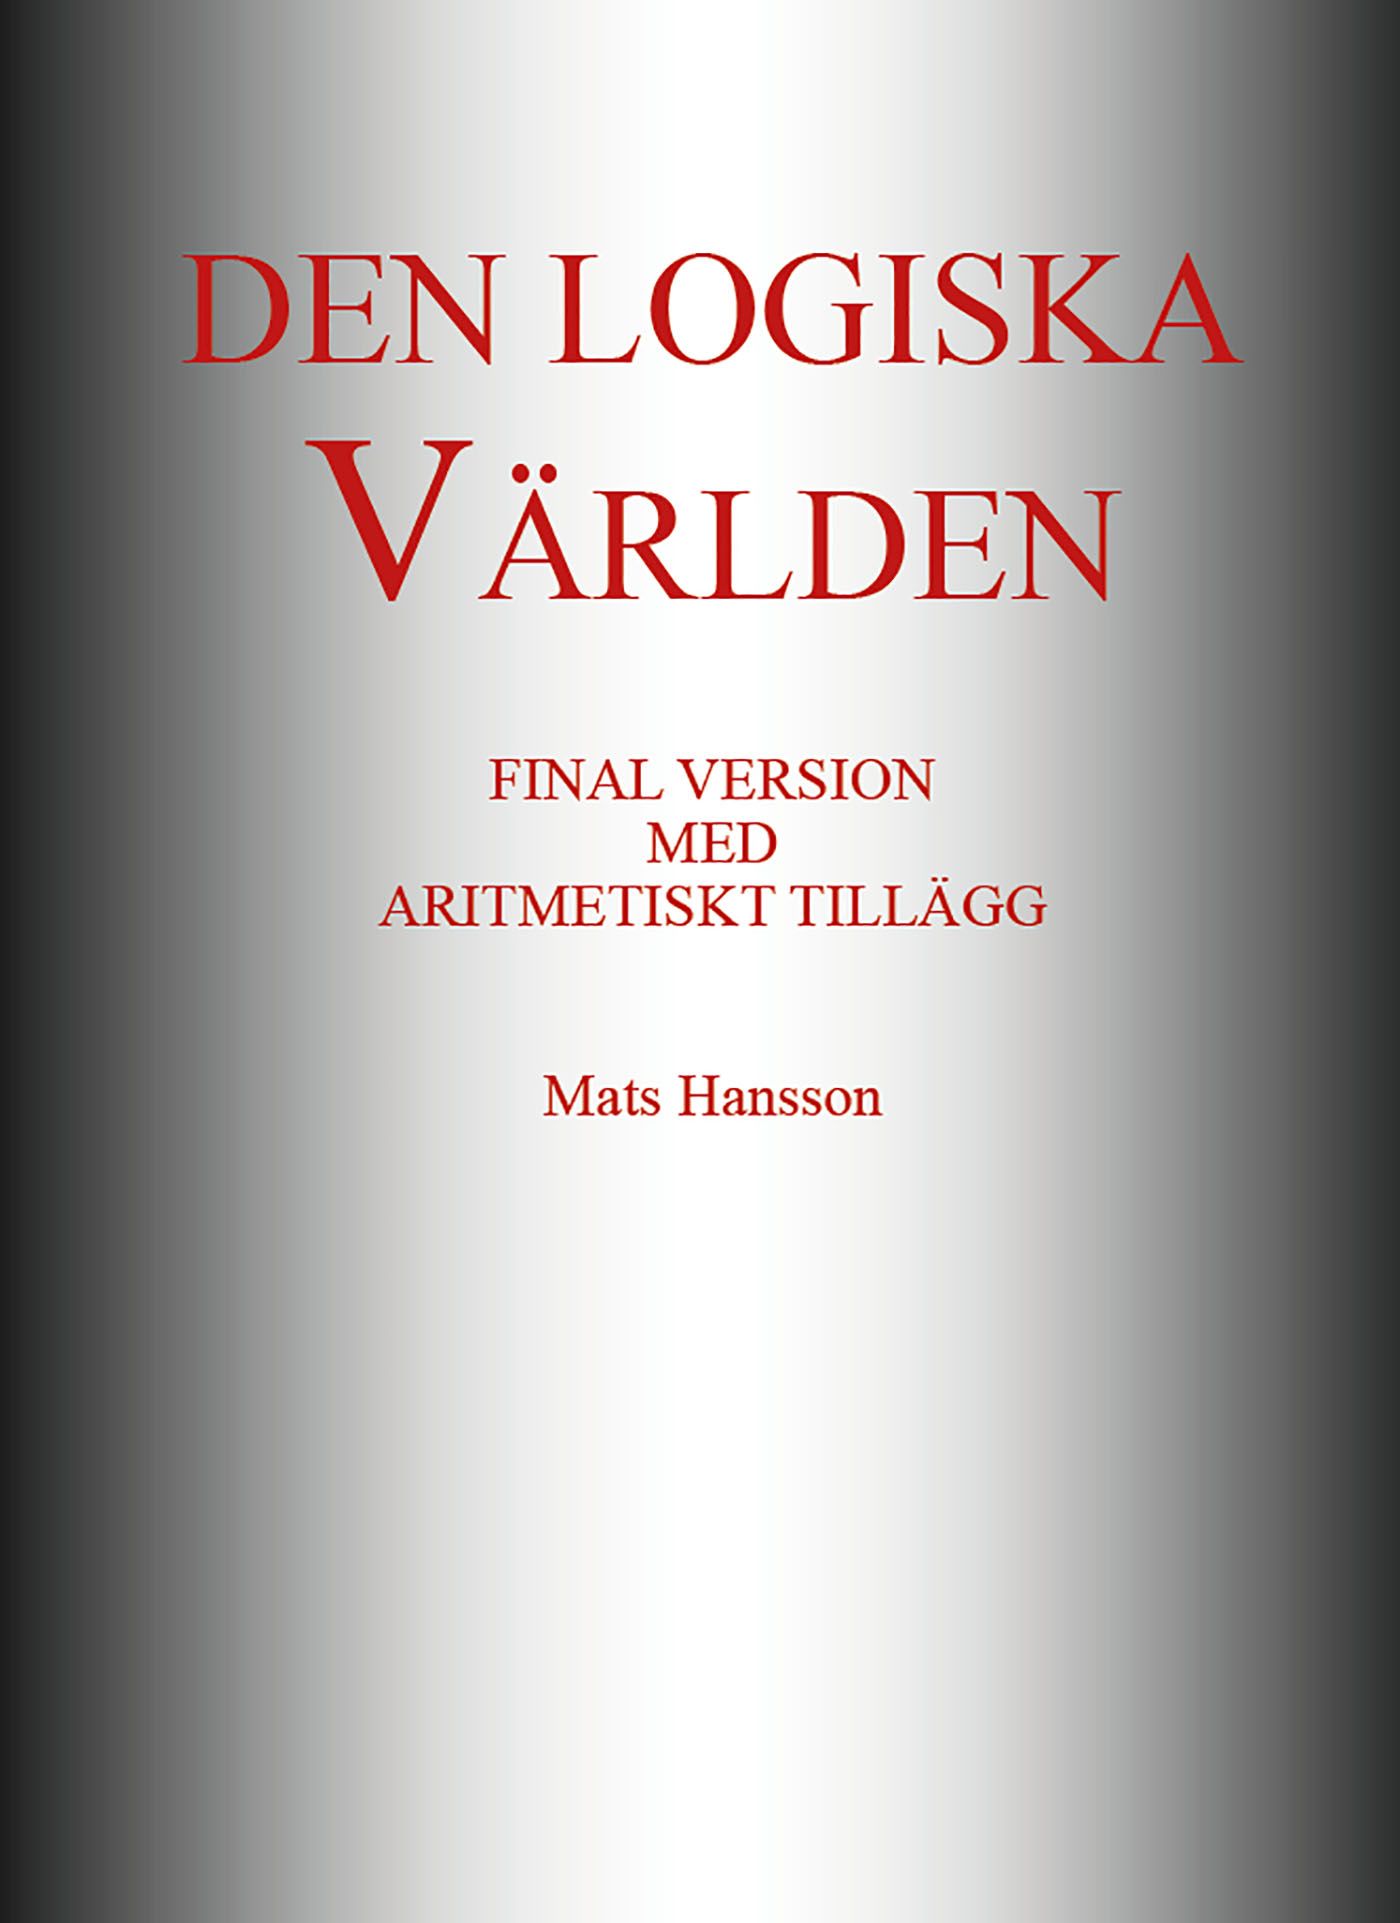 Den logiska Världen, eBook by Mats Hansson